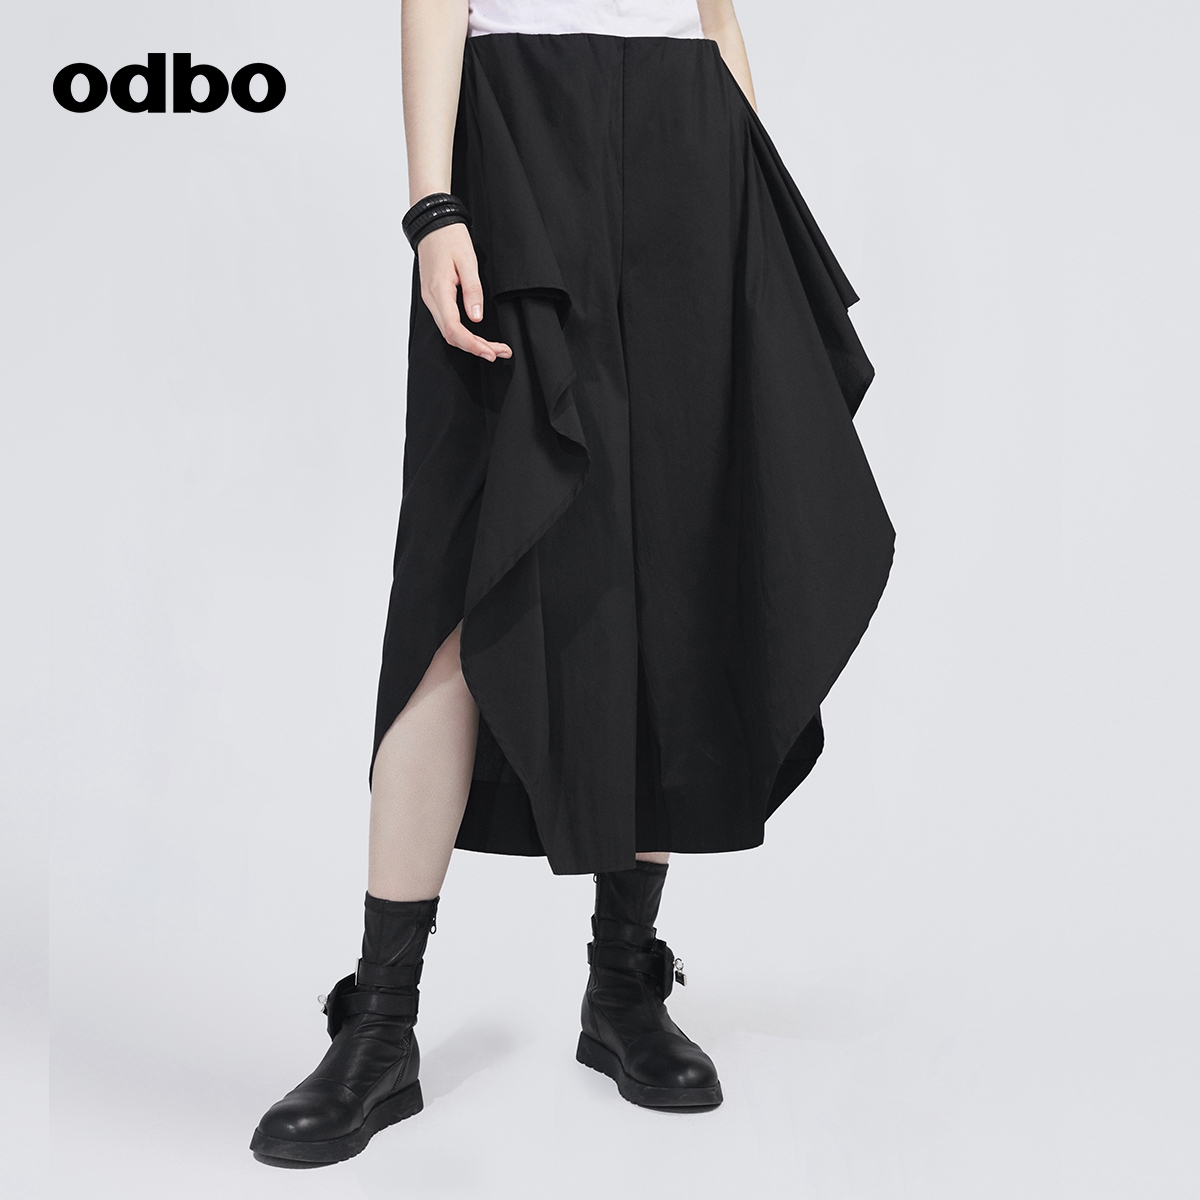 欧迪比欧原创设计黑色不对称阔腿裤 女秋装 odbo 休闲裙裤 新款